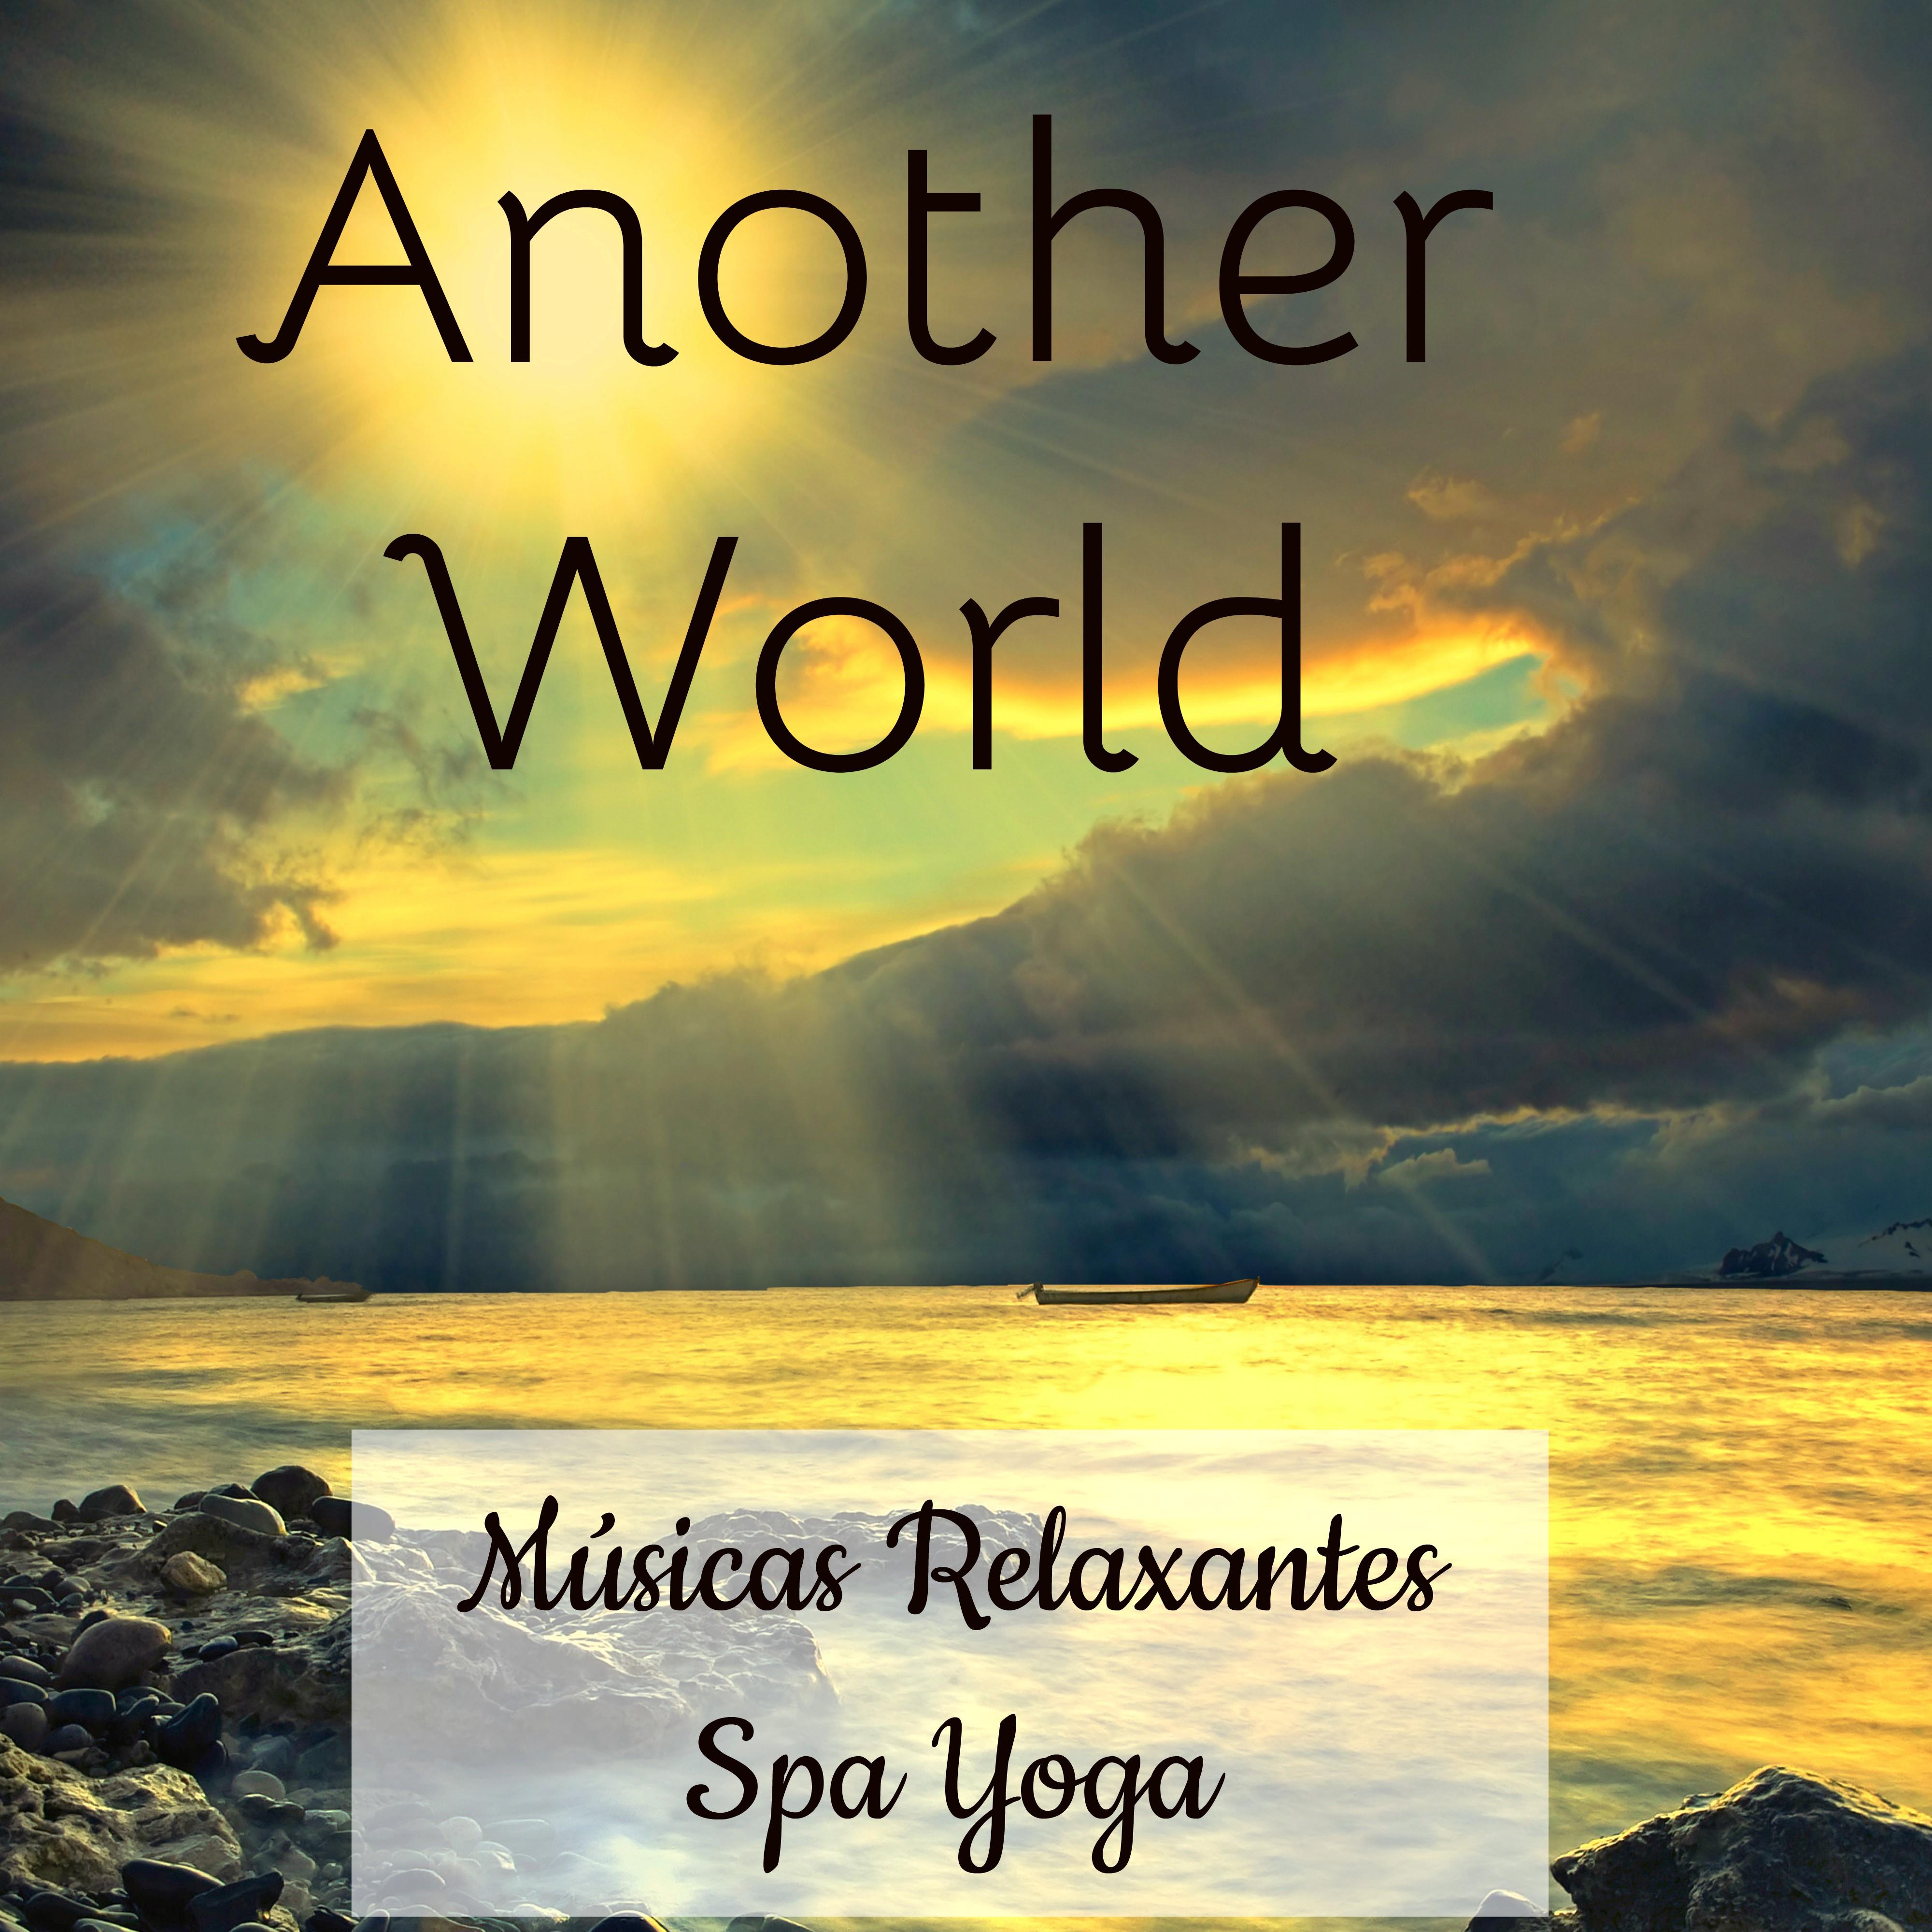 Another World - Músicas Relaxantes Spa Yoga para Estudar Saude Mental Saudação ao Sol Bem Estar Fisico e Doces Sonhos con Sons da Natureza Binaurais Instrumentais